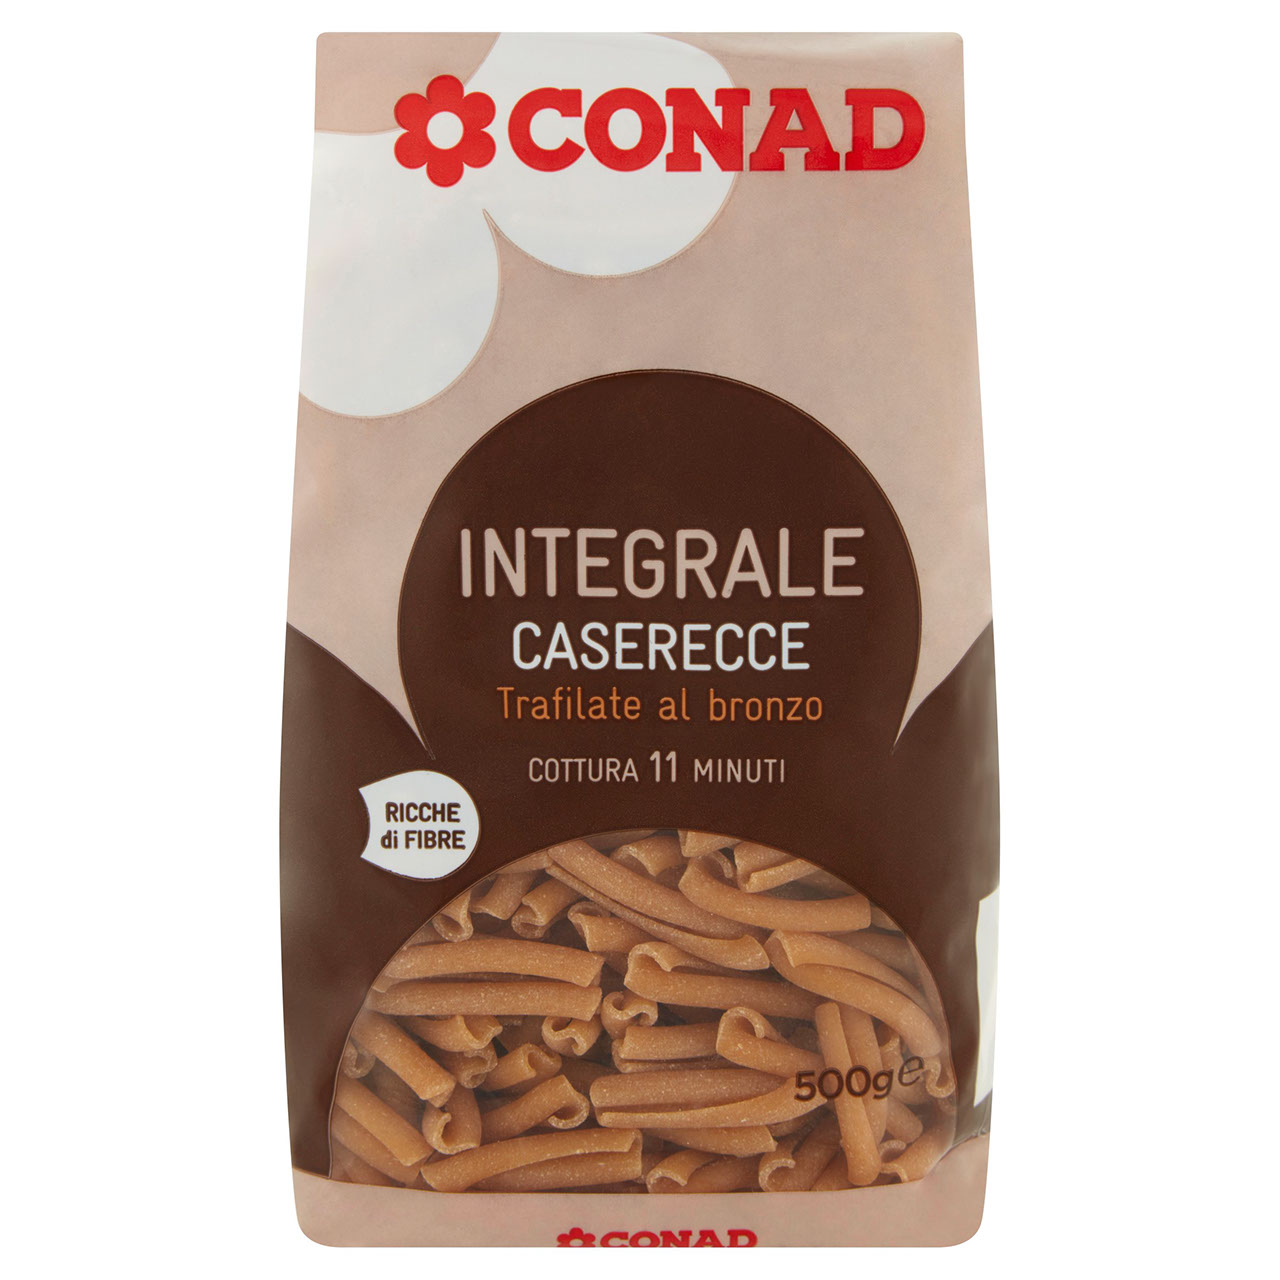 Pasta Integrale Caserecce 500 g Conad online